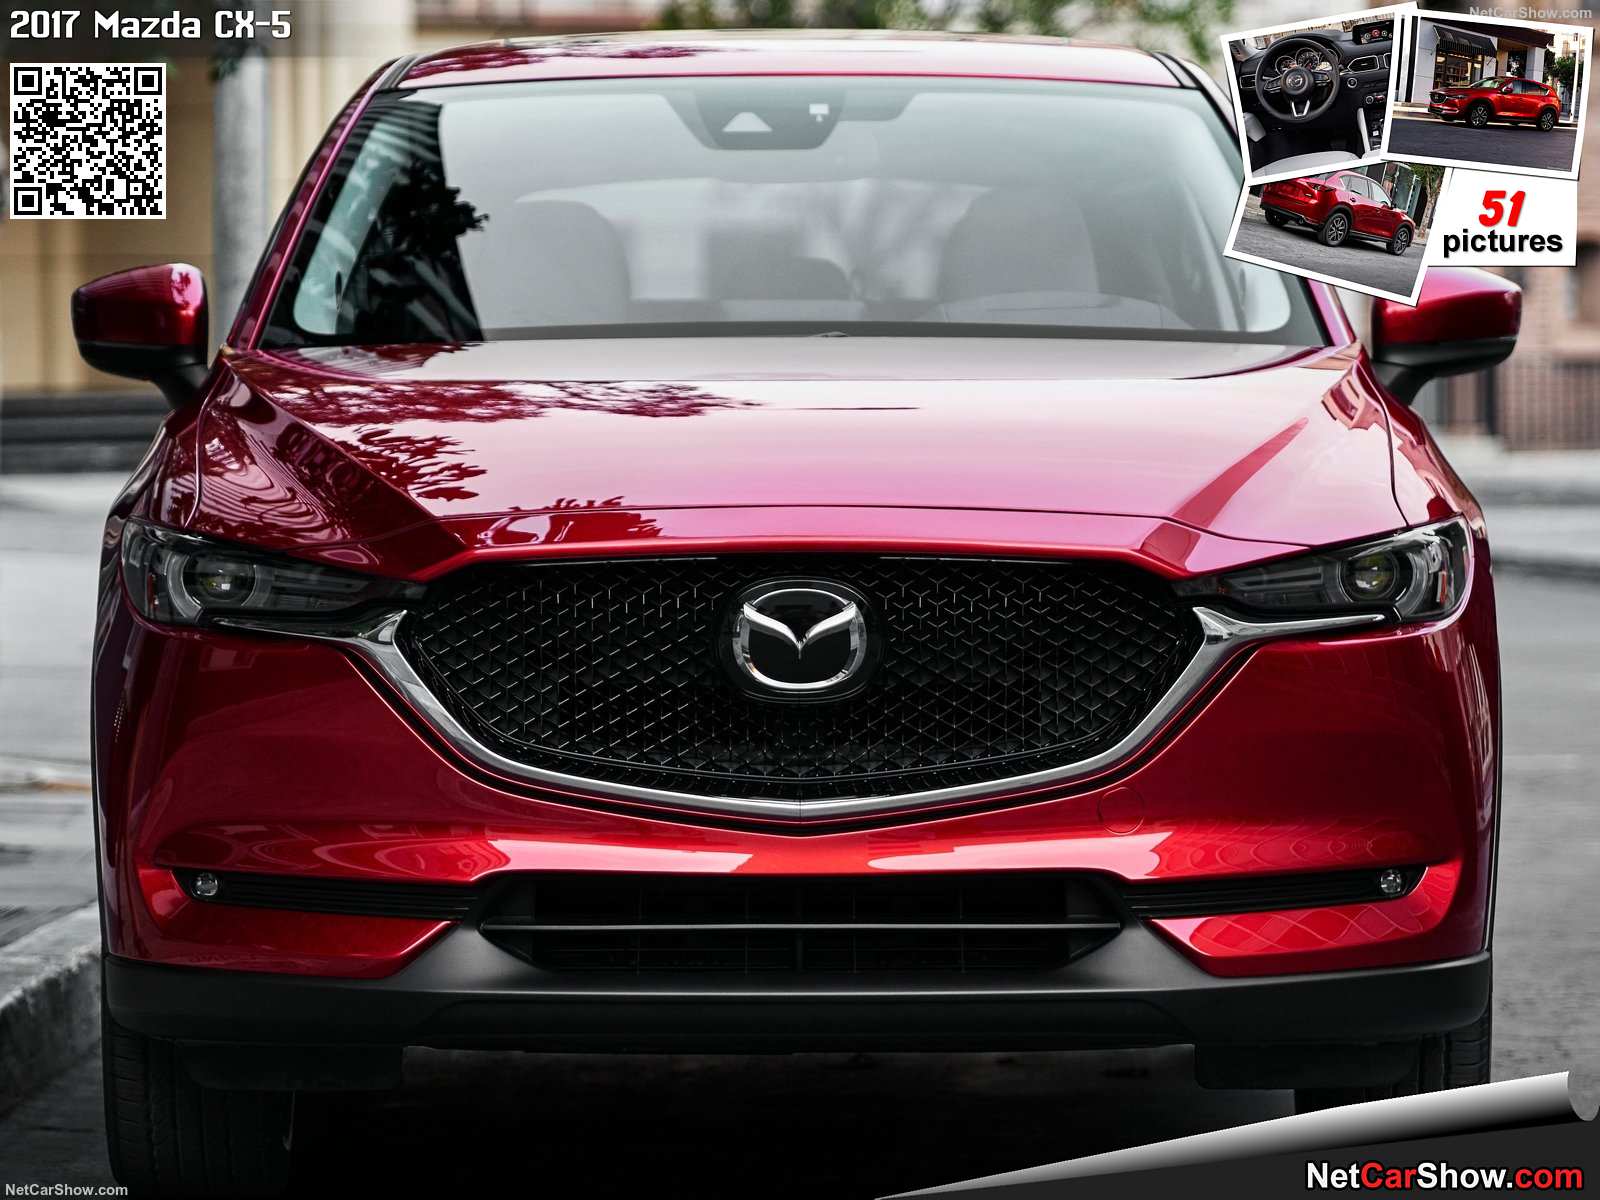 Mazda-CX-5-2017-1600-14.jpg